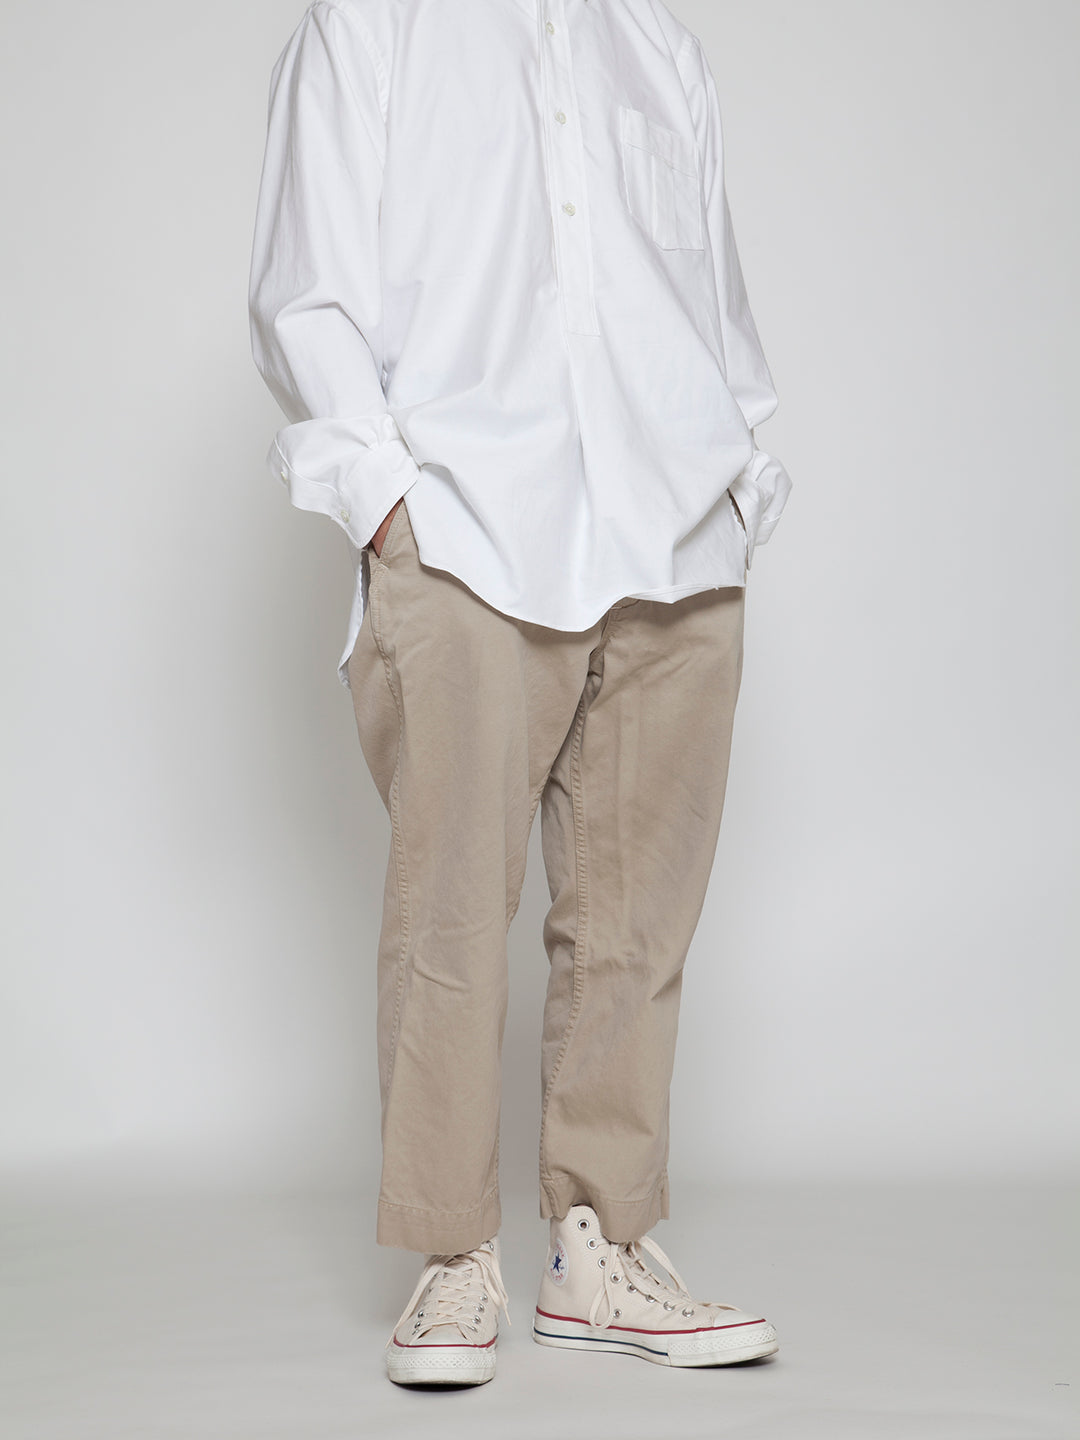 CHINO CLOTH・DESERT SLACKS x WHITE SHIRT